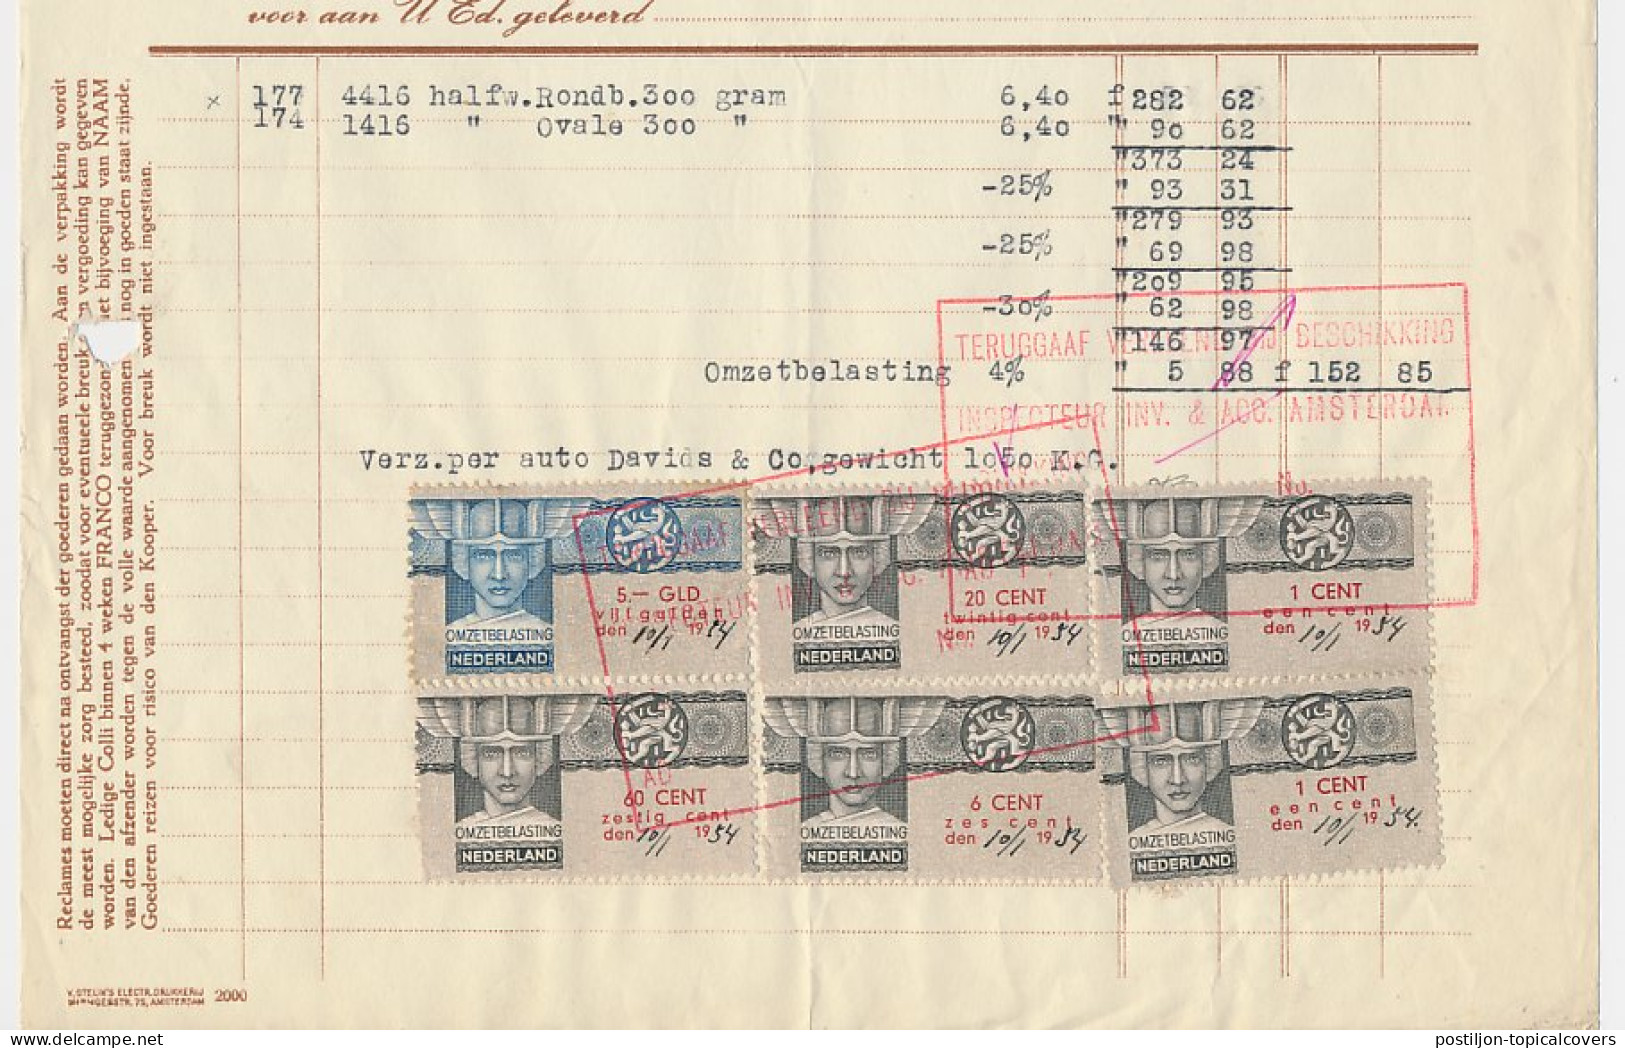 Omzetbelasting Diverse Waarden - Nieuw Buinen 1934 - Fiscaux